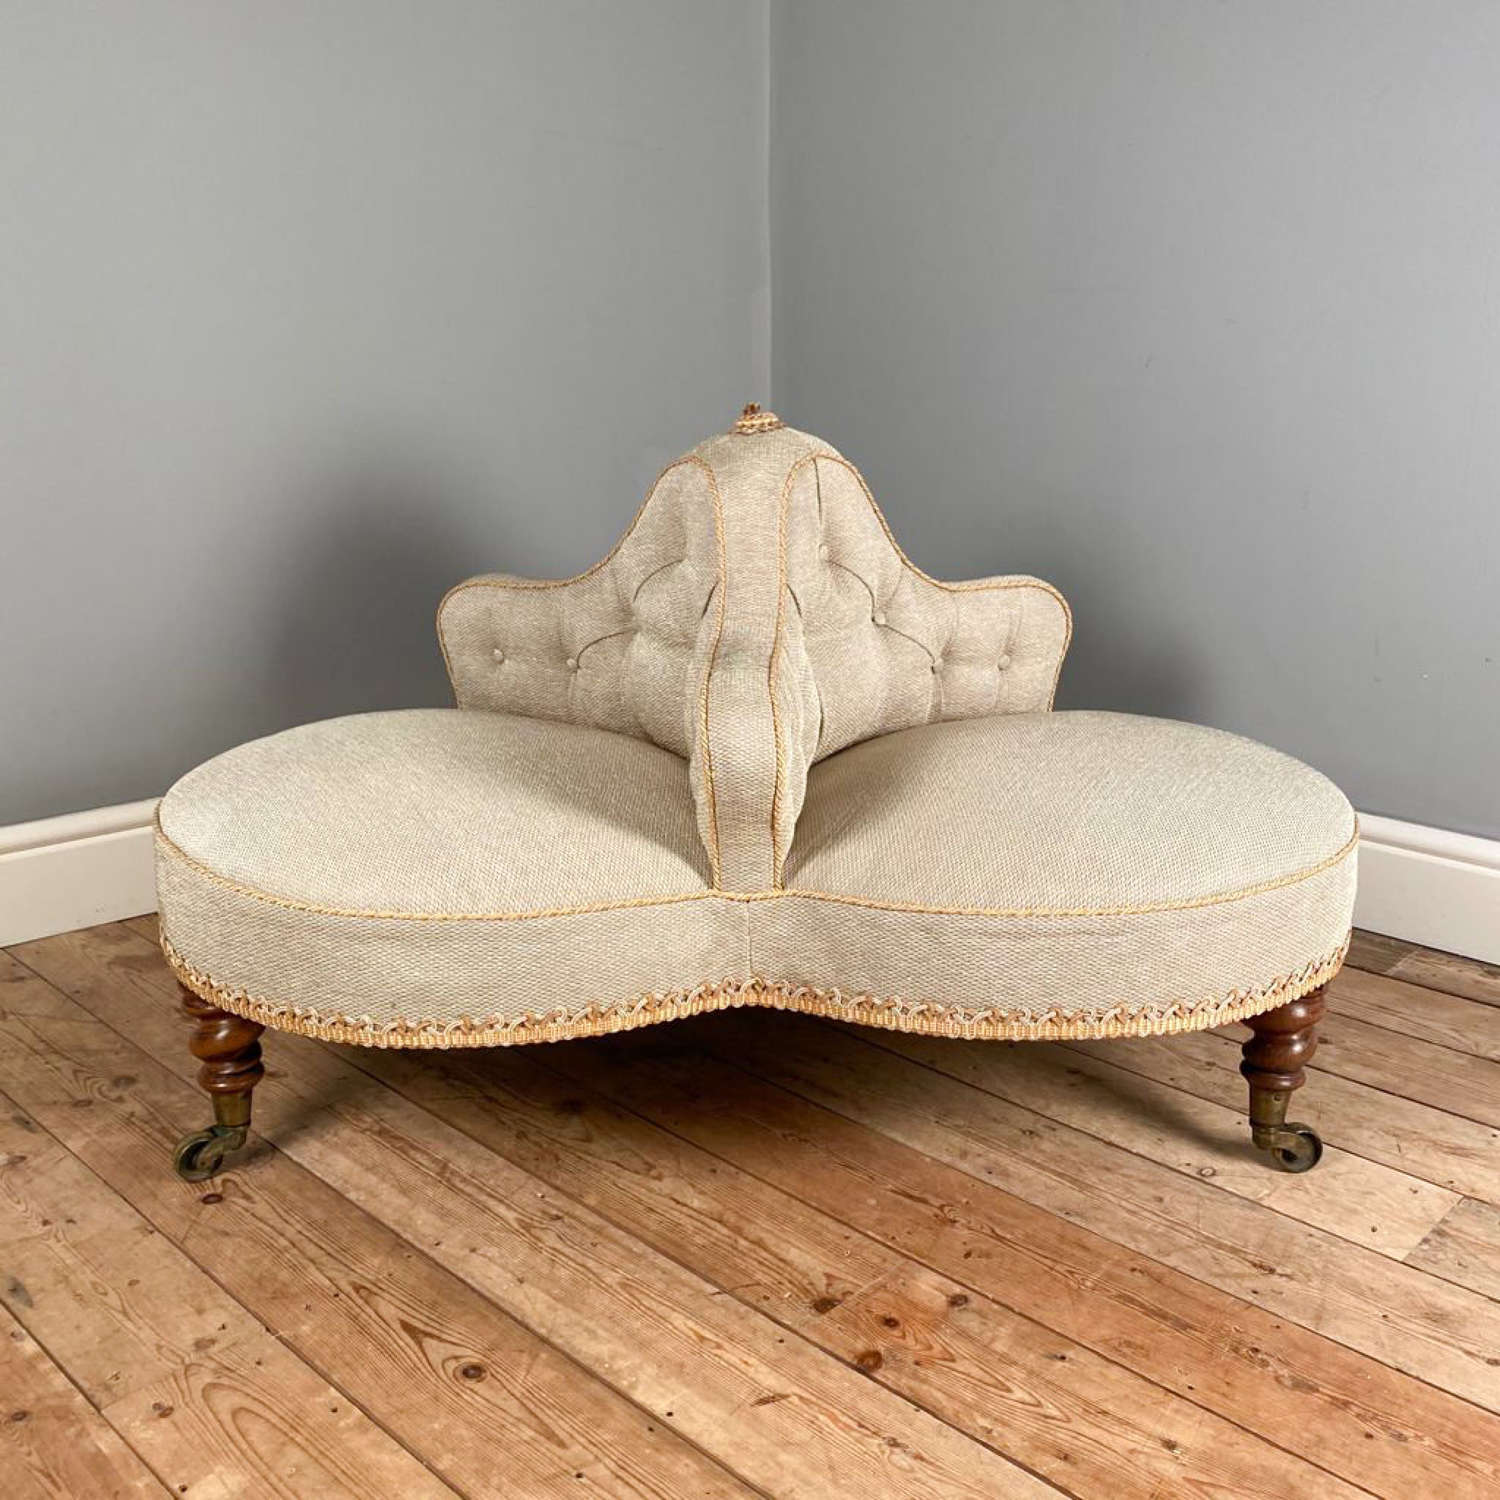 19th Century Cloverleaf Conversation Seat